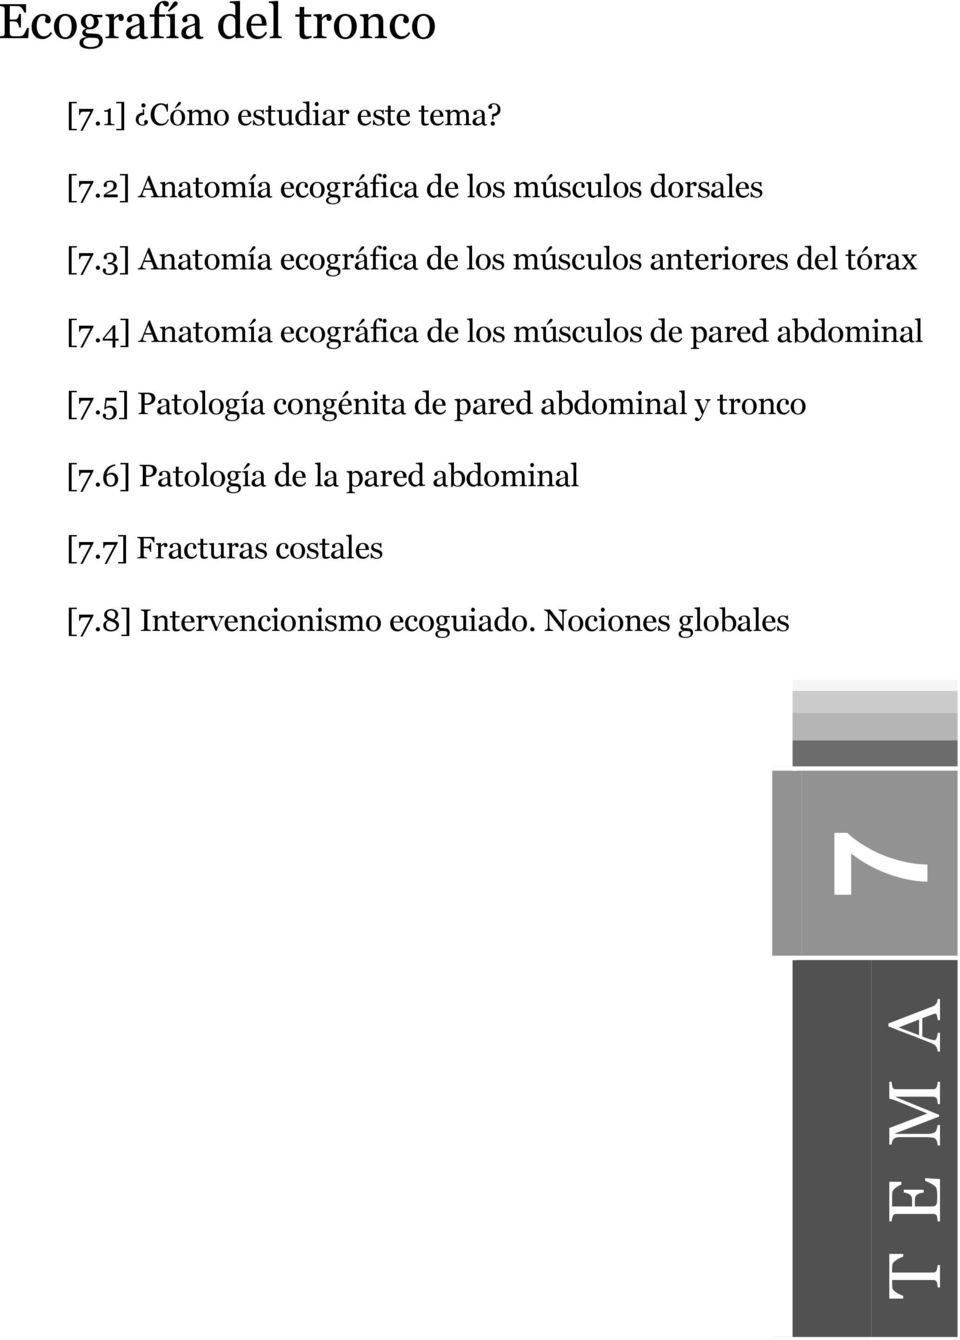 4] Anatomía ecográfica de los músculos de pared abdominal [7.